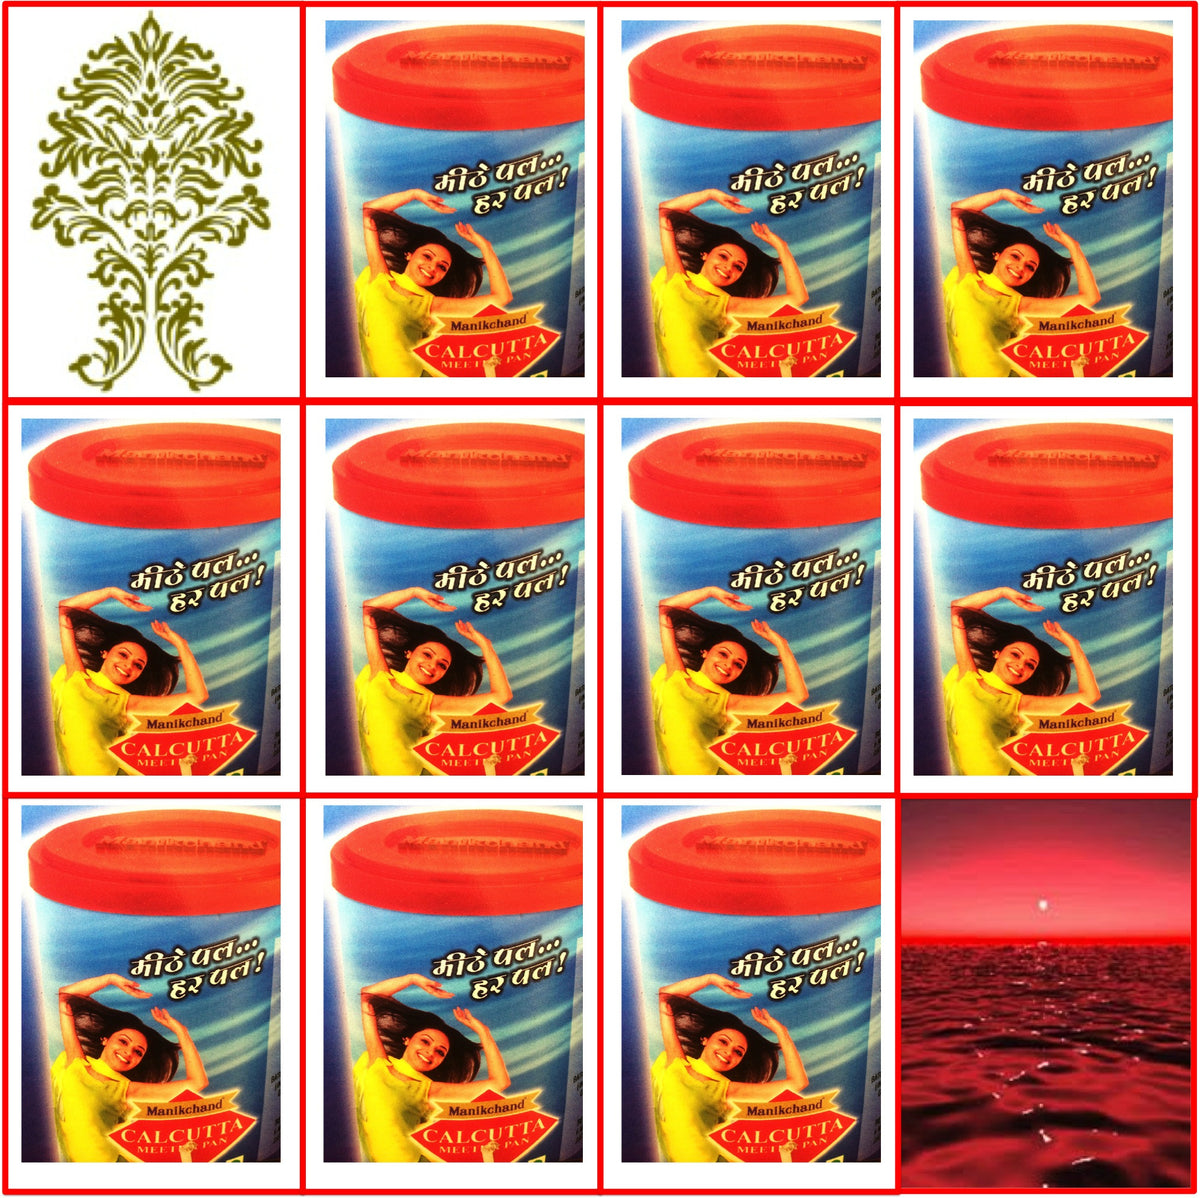 10 Cans 100g RMD Calcutta Meetha Pan Export Quality Fresh